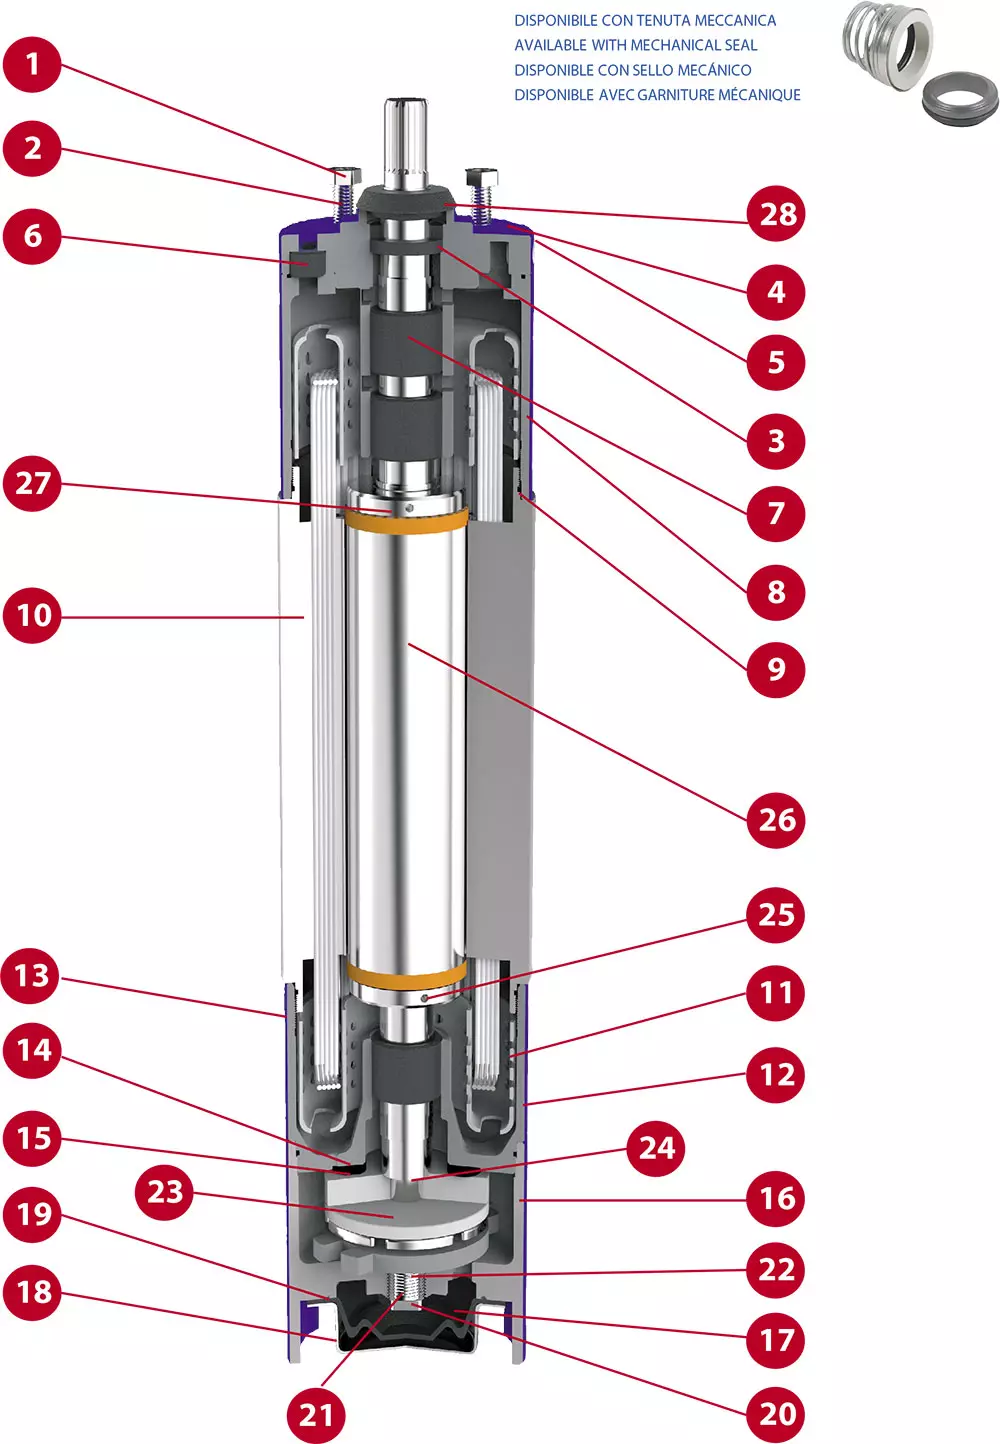 Piezas de repuestos para motores sumersibles 4'' pulgadas: imagen